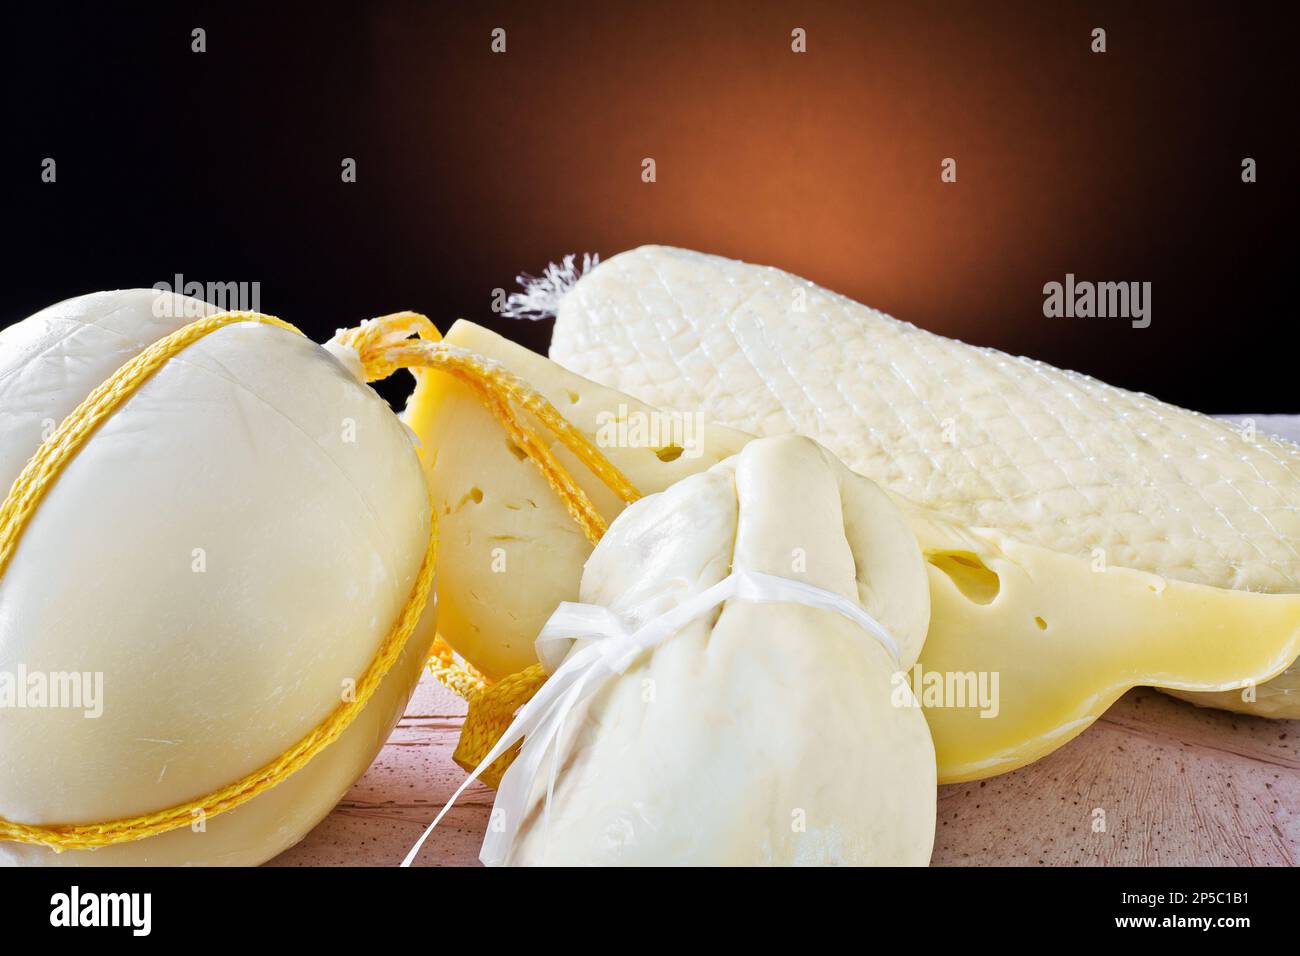 Diversi tipi di formaggi italiani: Scamorza, provolone e caciocavallo con latte vaccino. Foto Stock